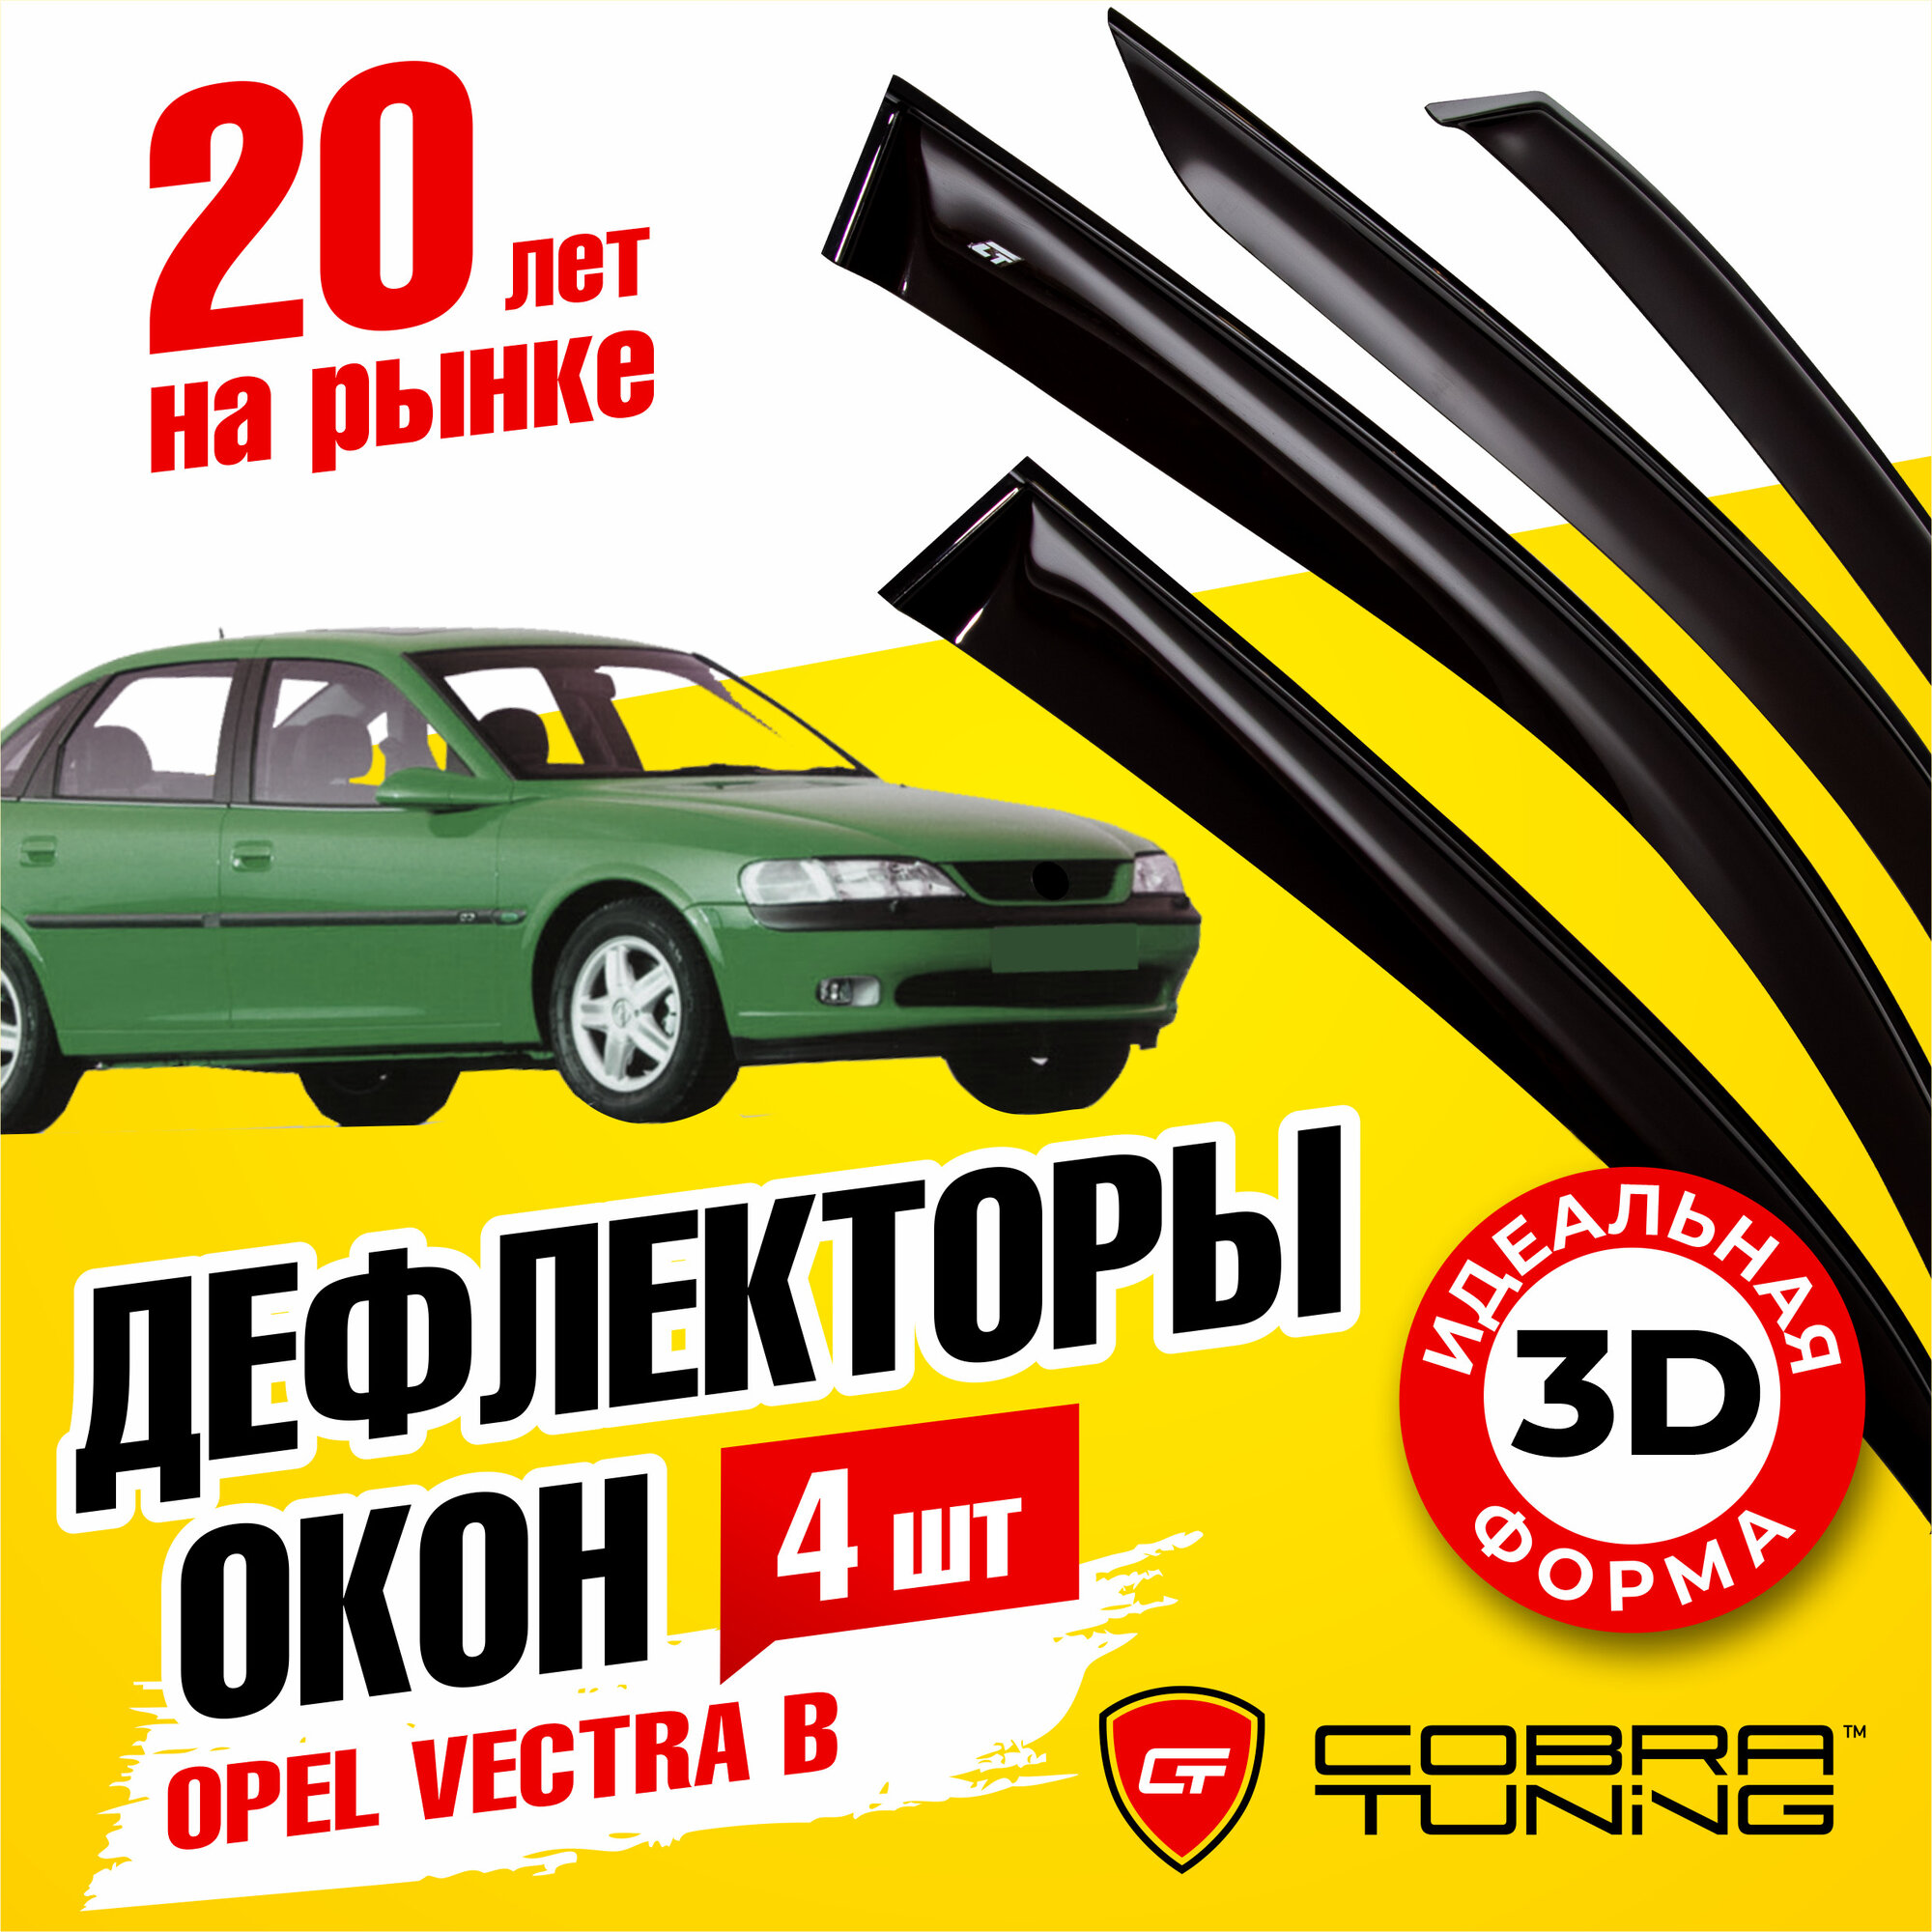 Дефлекторы боковых окон для автомобиля Opel Vectra B (Опель Вектра) седан 1996-2002 ветровики с хром молдингом Cobra Tuning